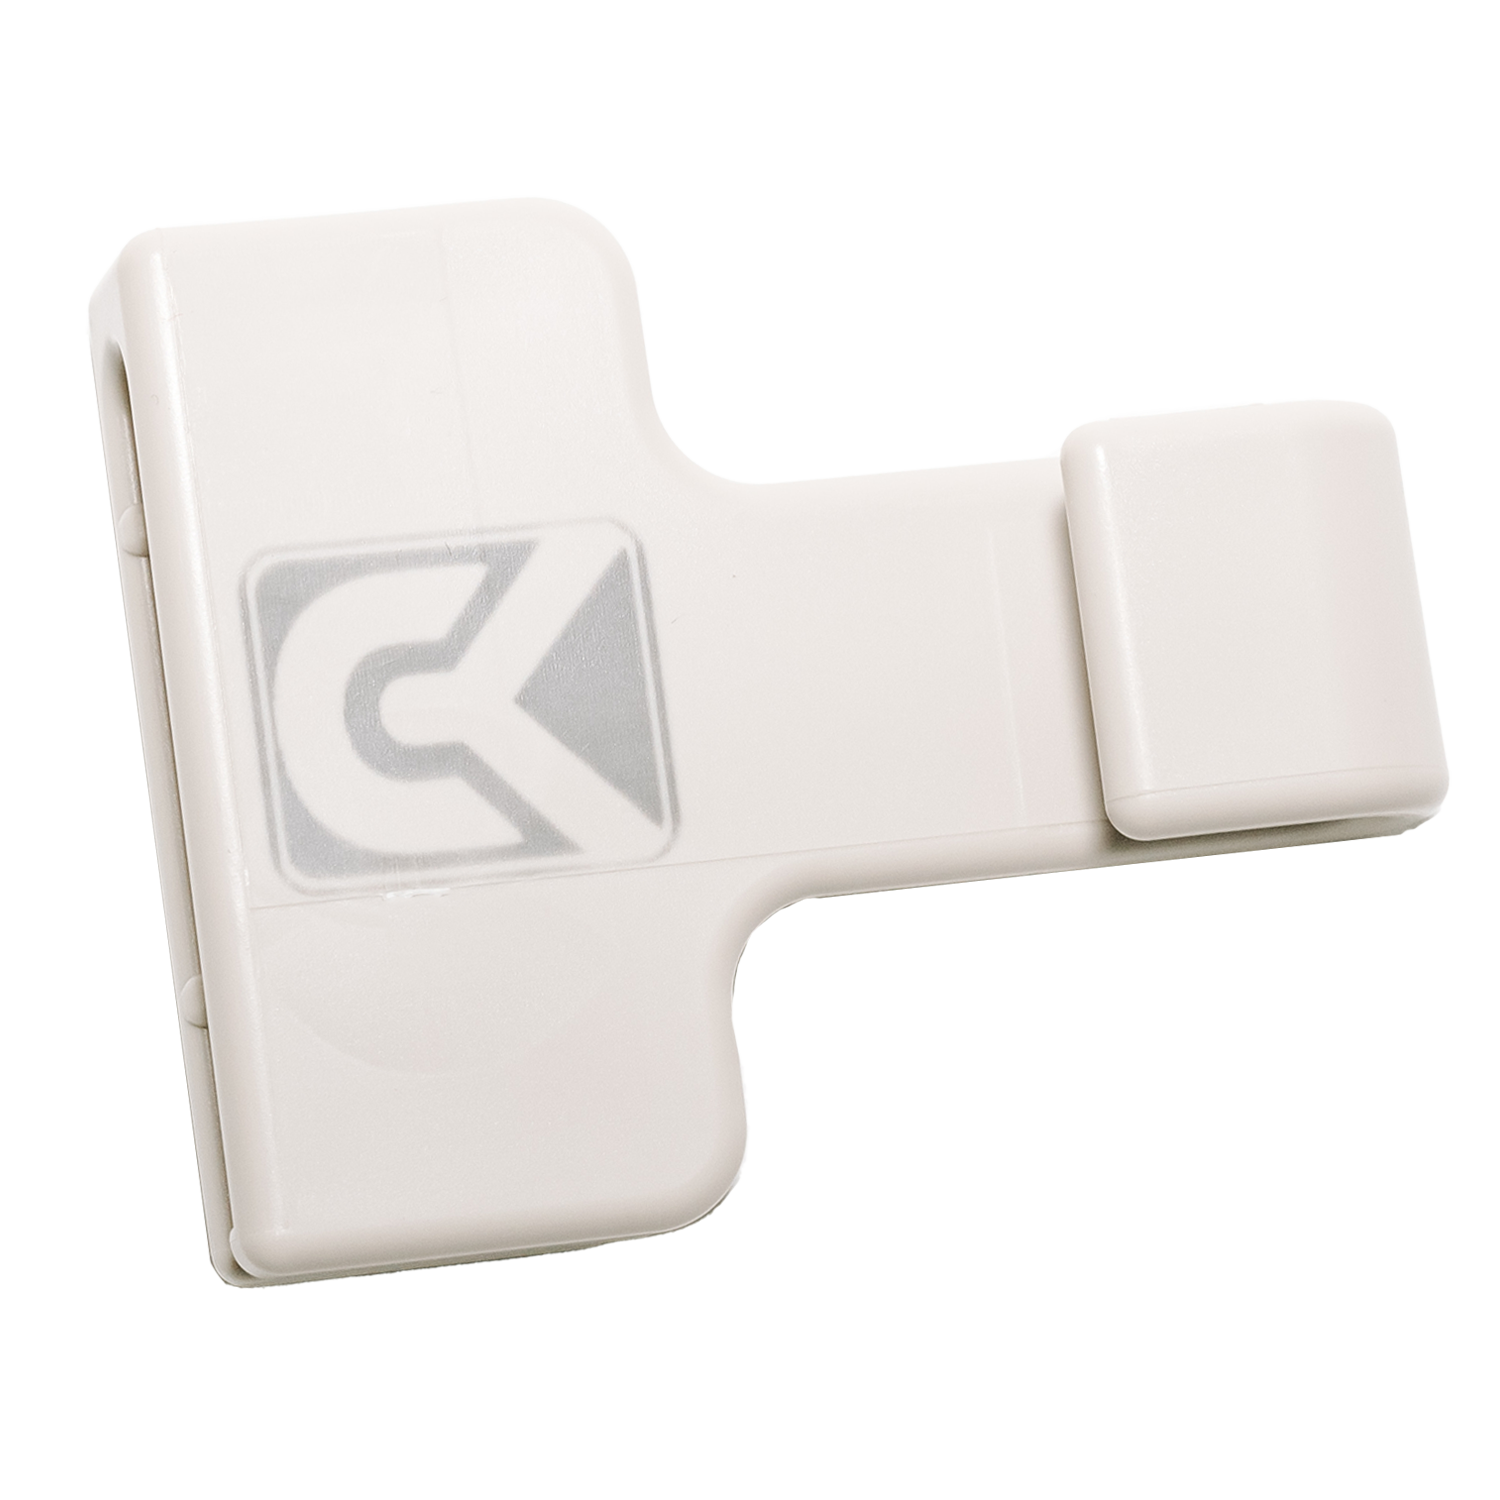 CarryKeeper Single Pack - DESERT SAND